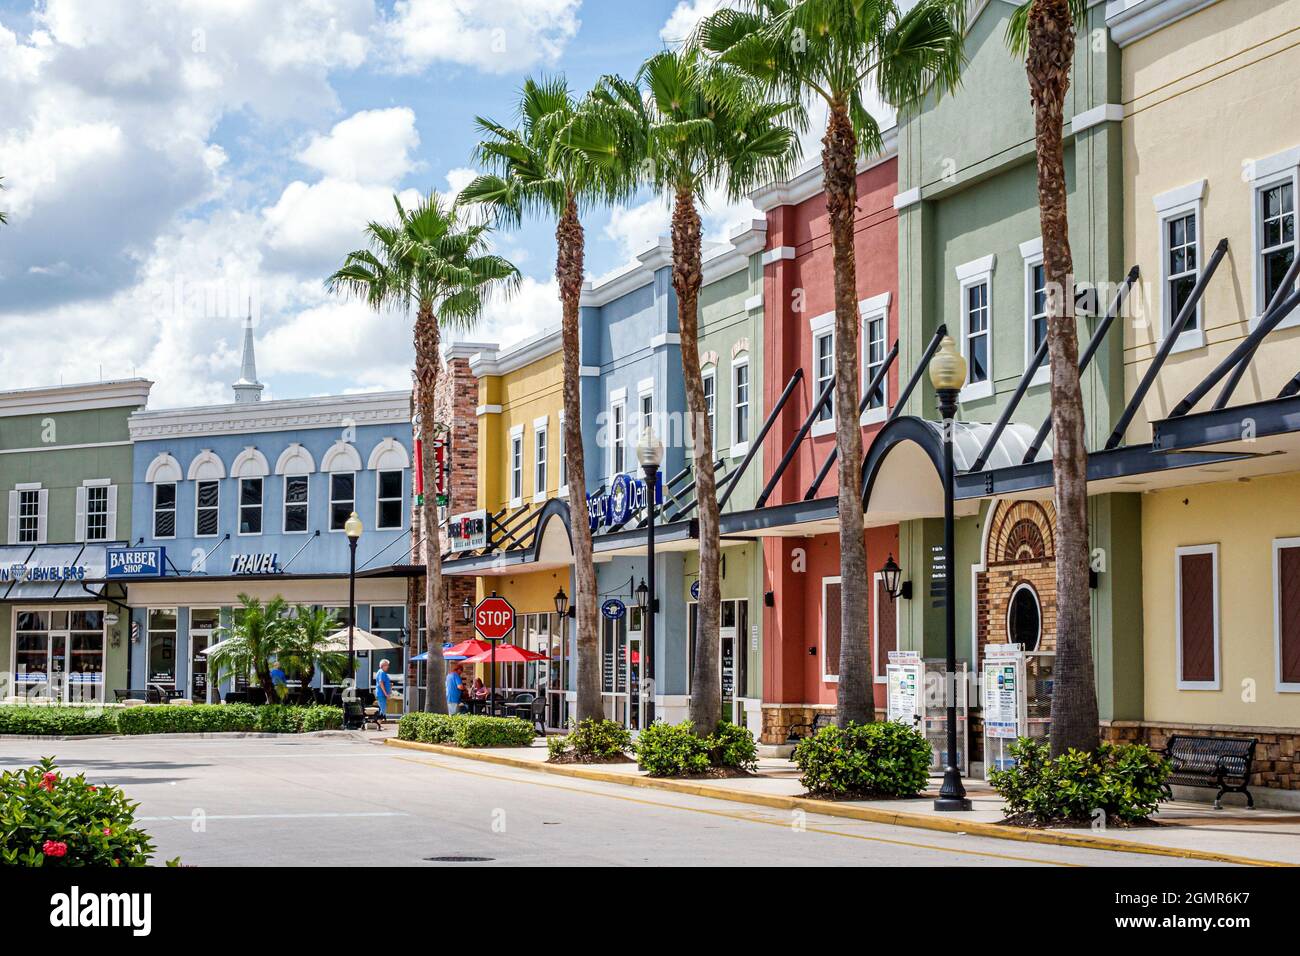 Florida Port St. Saint Lucie Tradition Square, negozi di mercato negozi piccole imprese, Foto Stock